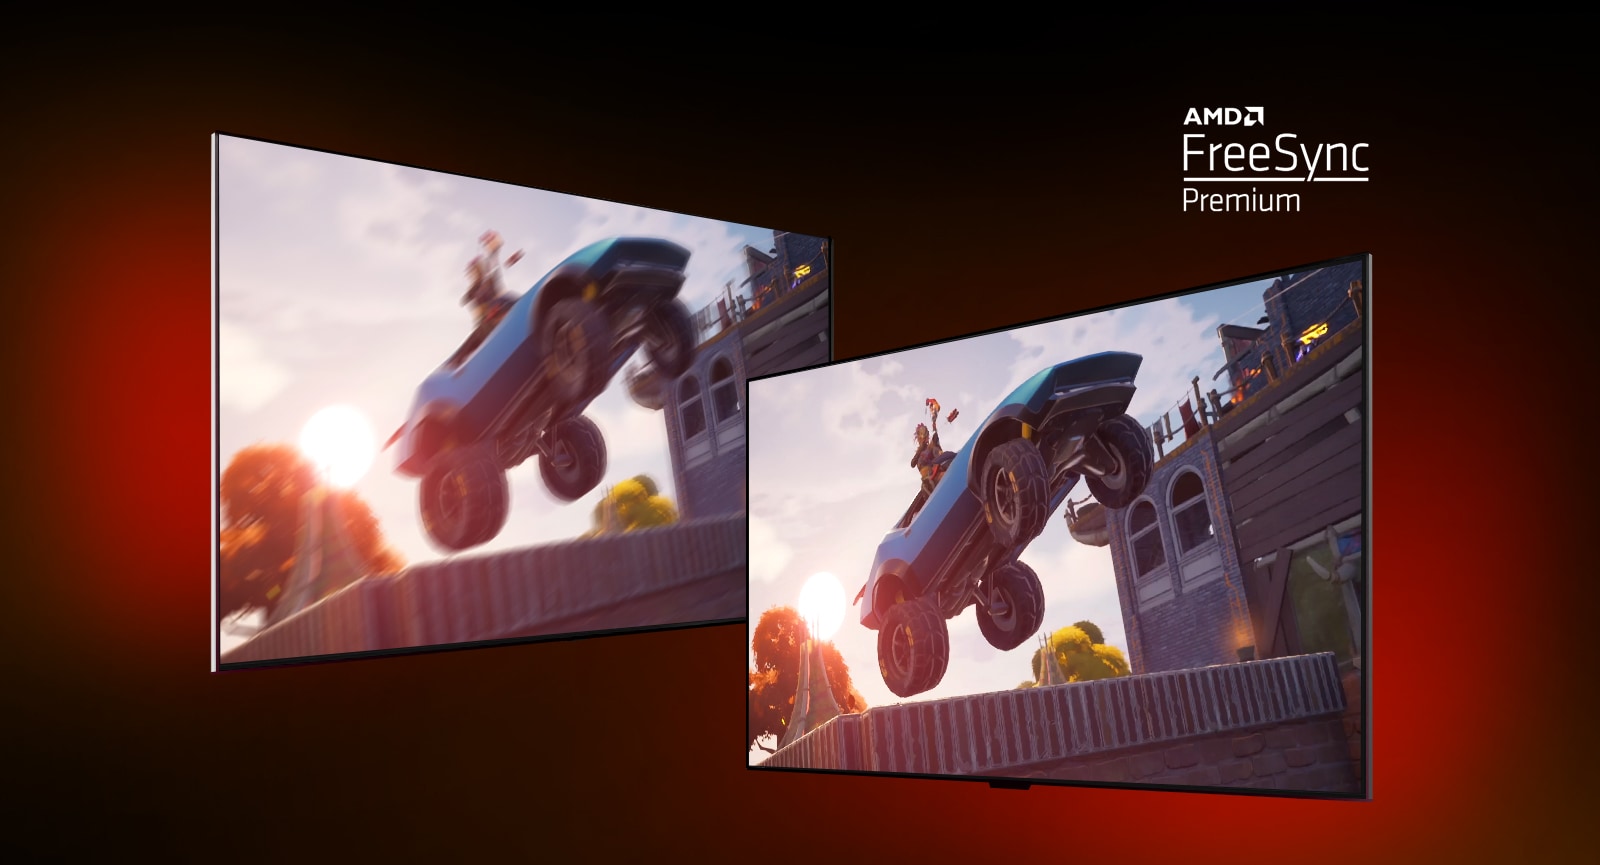 Na obrázku sú dva televízory. Na ľavom je zobrazená scéna z hry FORTNITE so závodným autom. Na pravom je zobrazená rovnaká scéna z hry, ale obraz je jasnejší a čistejší. V pravom hornom rohu sa zobrazuje logo AMD FreeSync premium.  